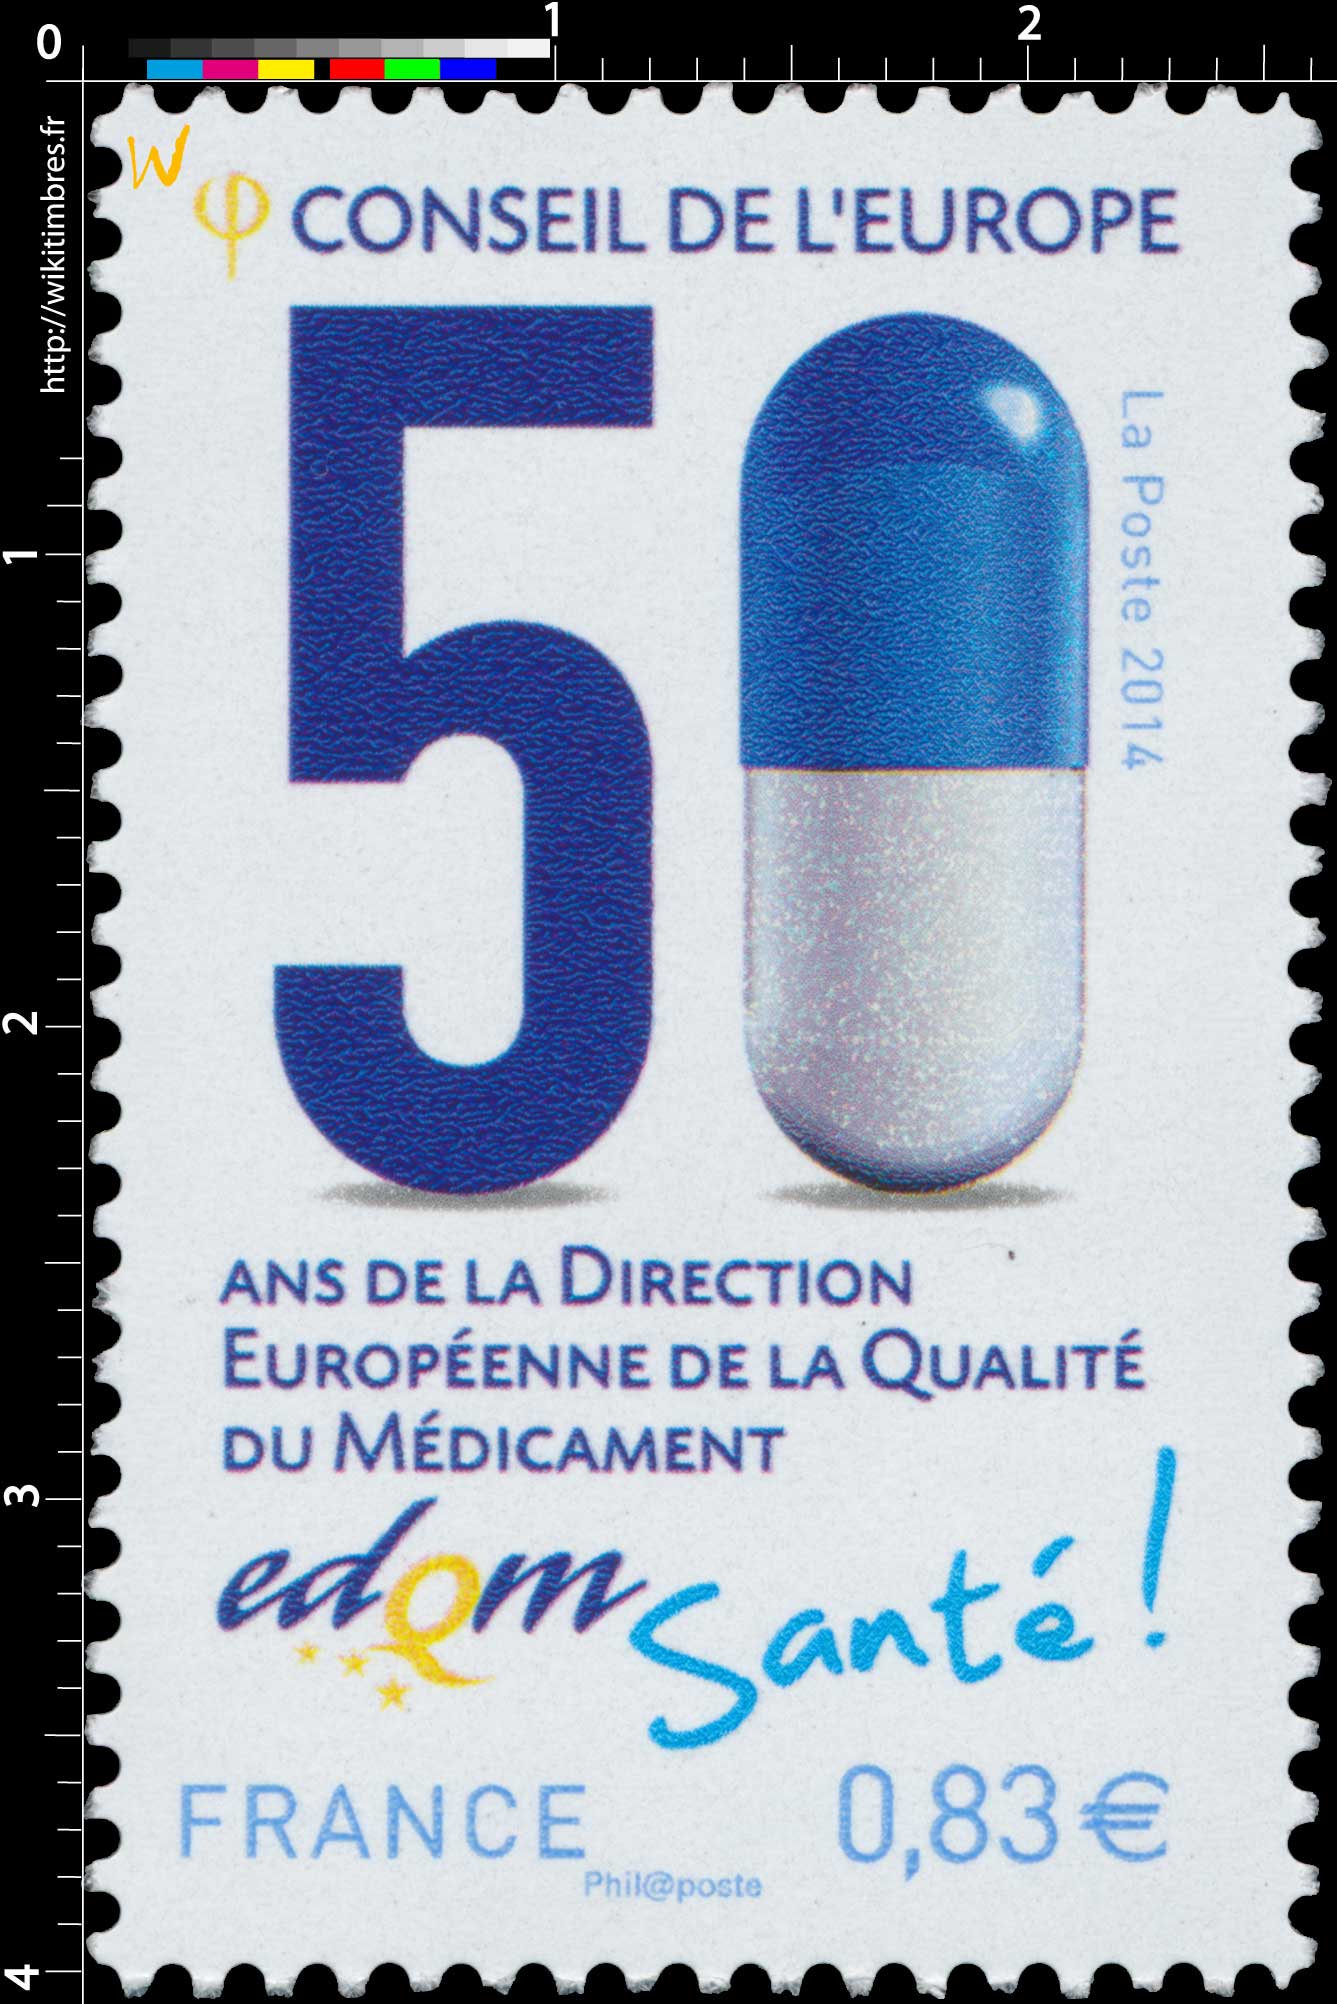 2014 CONSEIL DE L'EUROPE 50 ans de la Direction Européenne de la Qualité du Médicament edqm Santé !